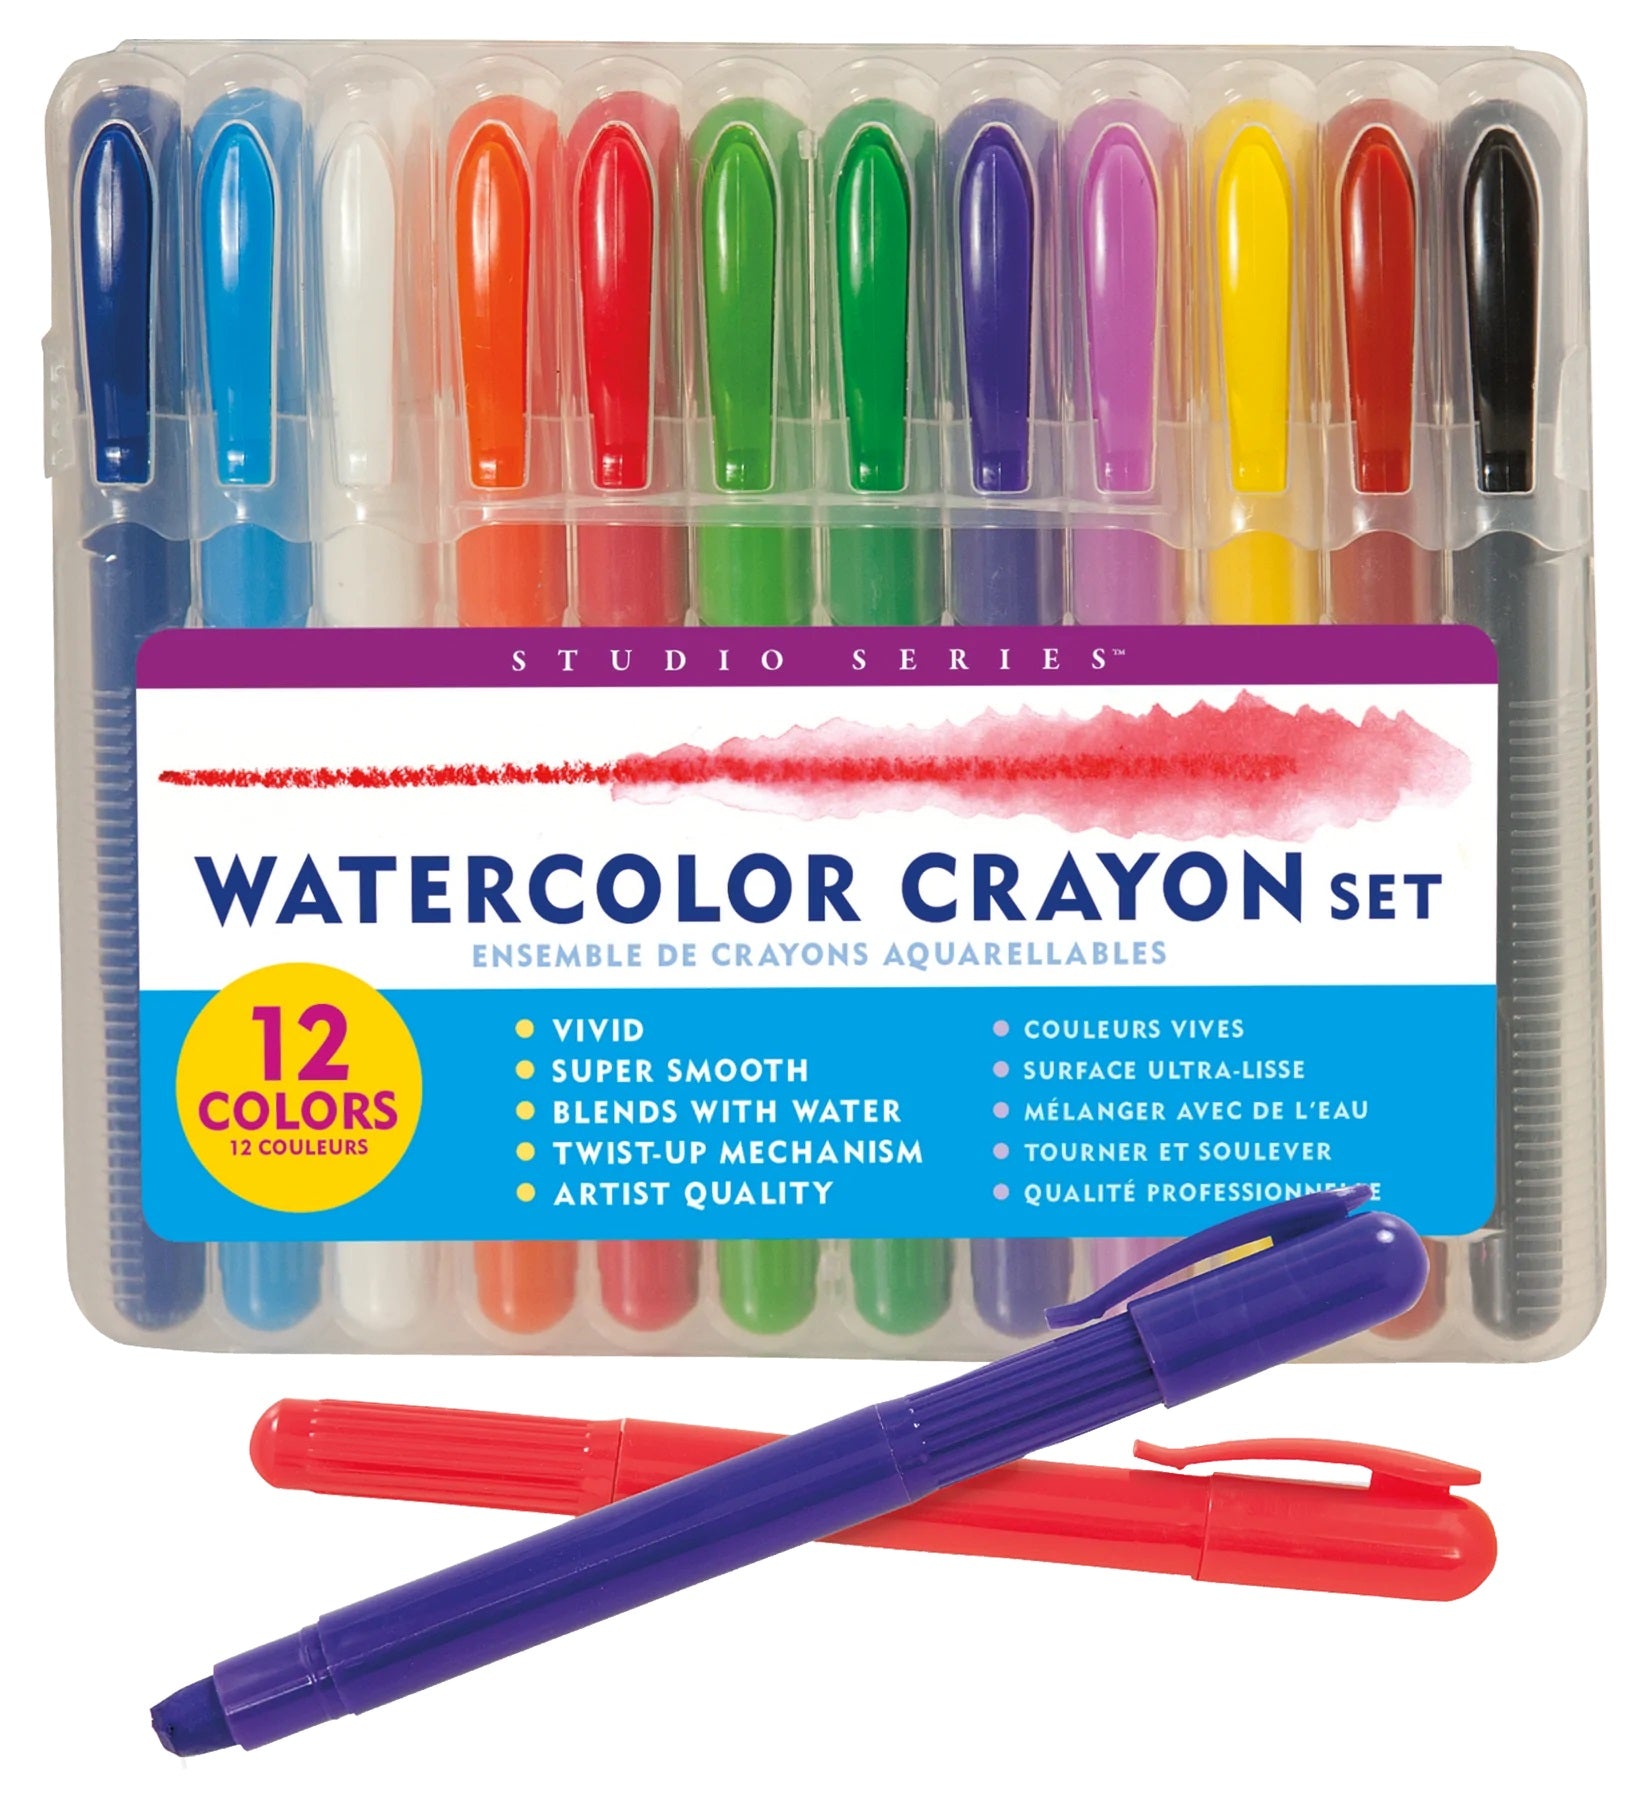 Watercolor Crayon Set